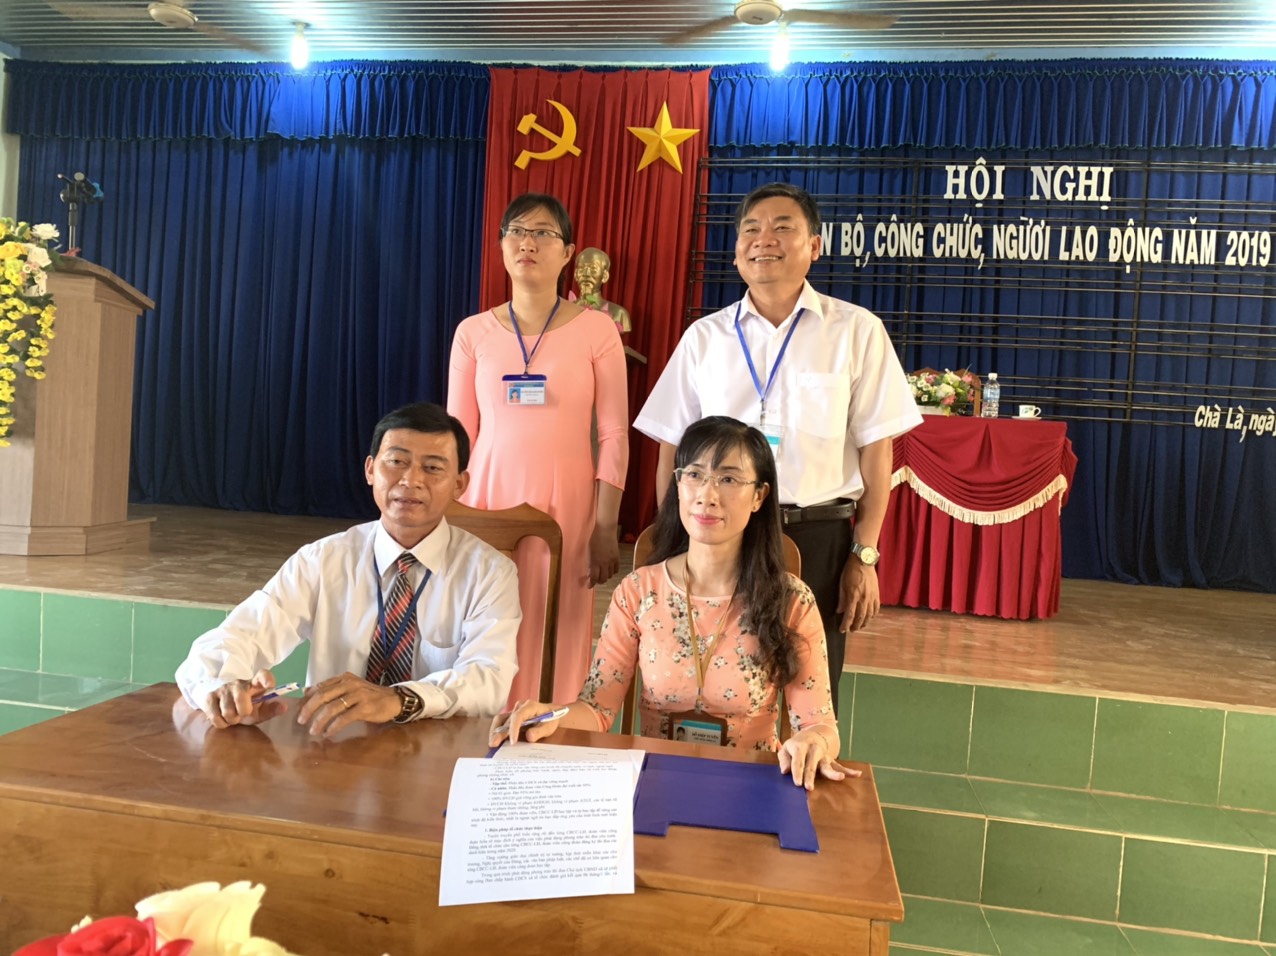 CĐCS xã Chà Là phối kết hợp UBND xã, tổ chức Hôi nghị CBCC và người lao động năm 2019.